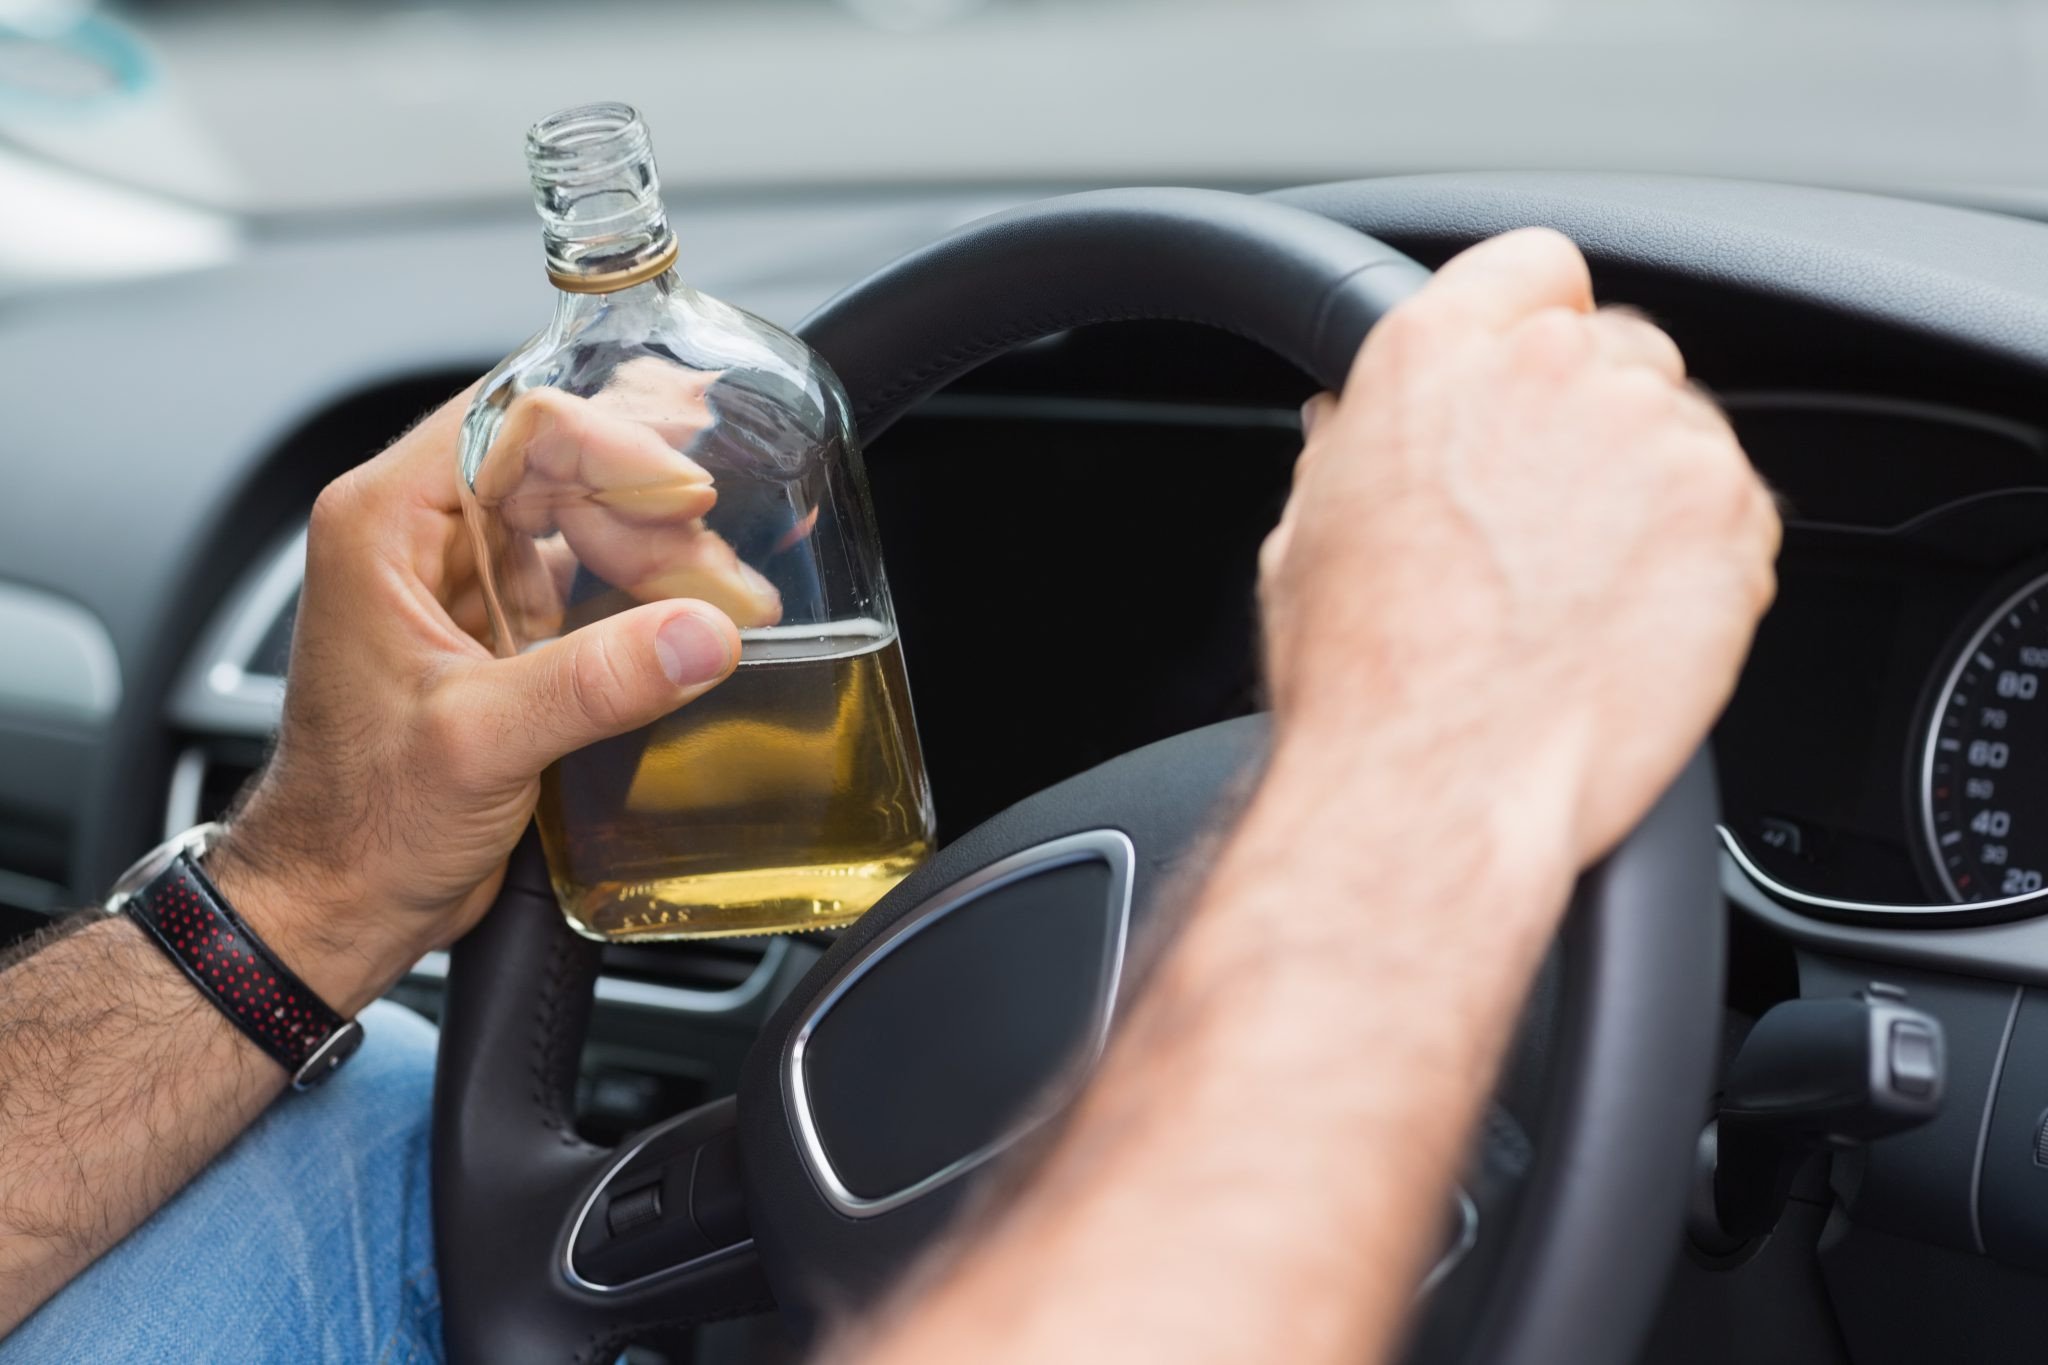 Пьяный херсонец предлагал патрульным взятку в 20 тысяч гривен: доза алкоголя в крови водителя в 7 раз превышала допустимую норму